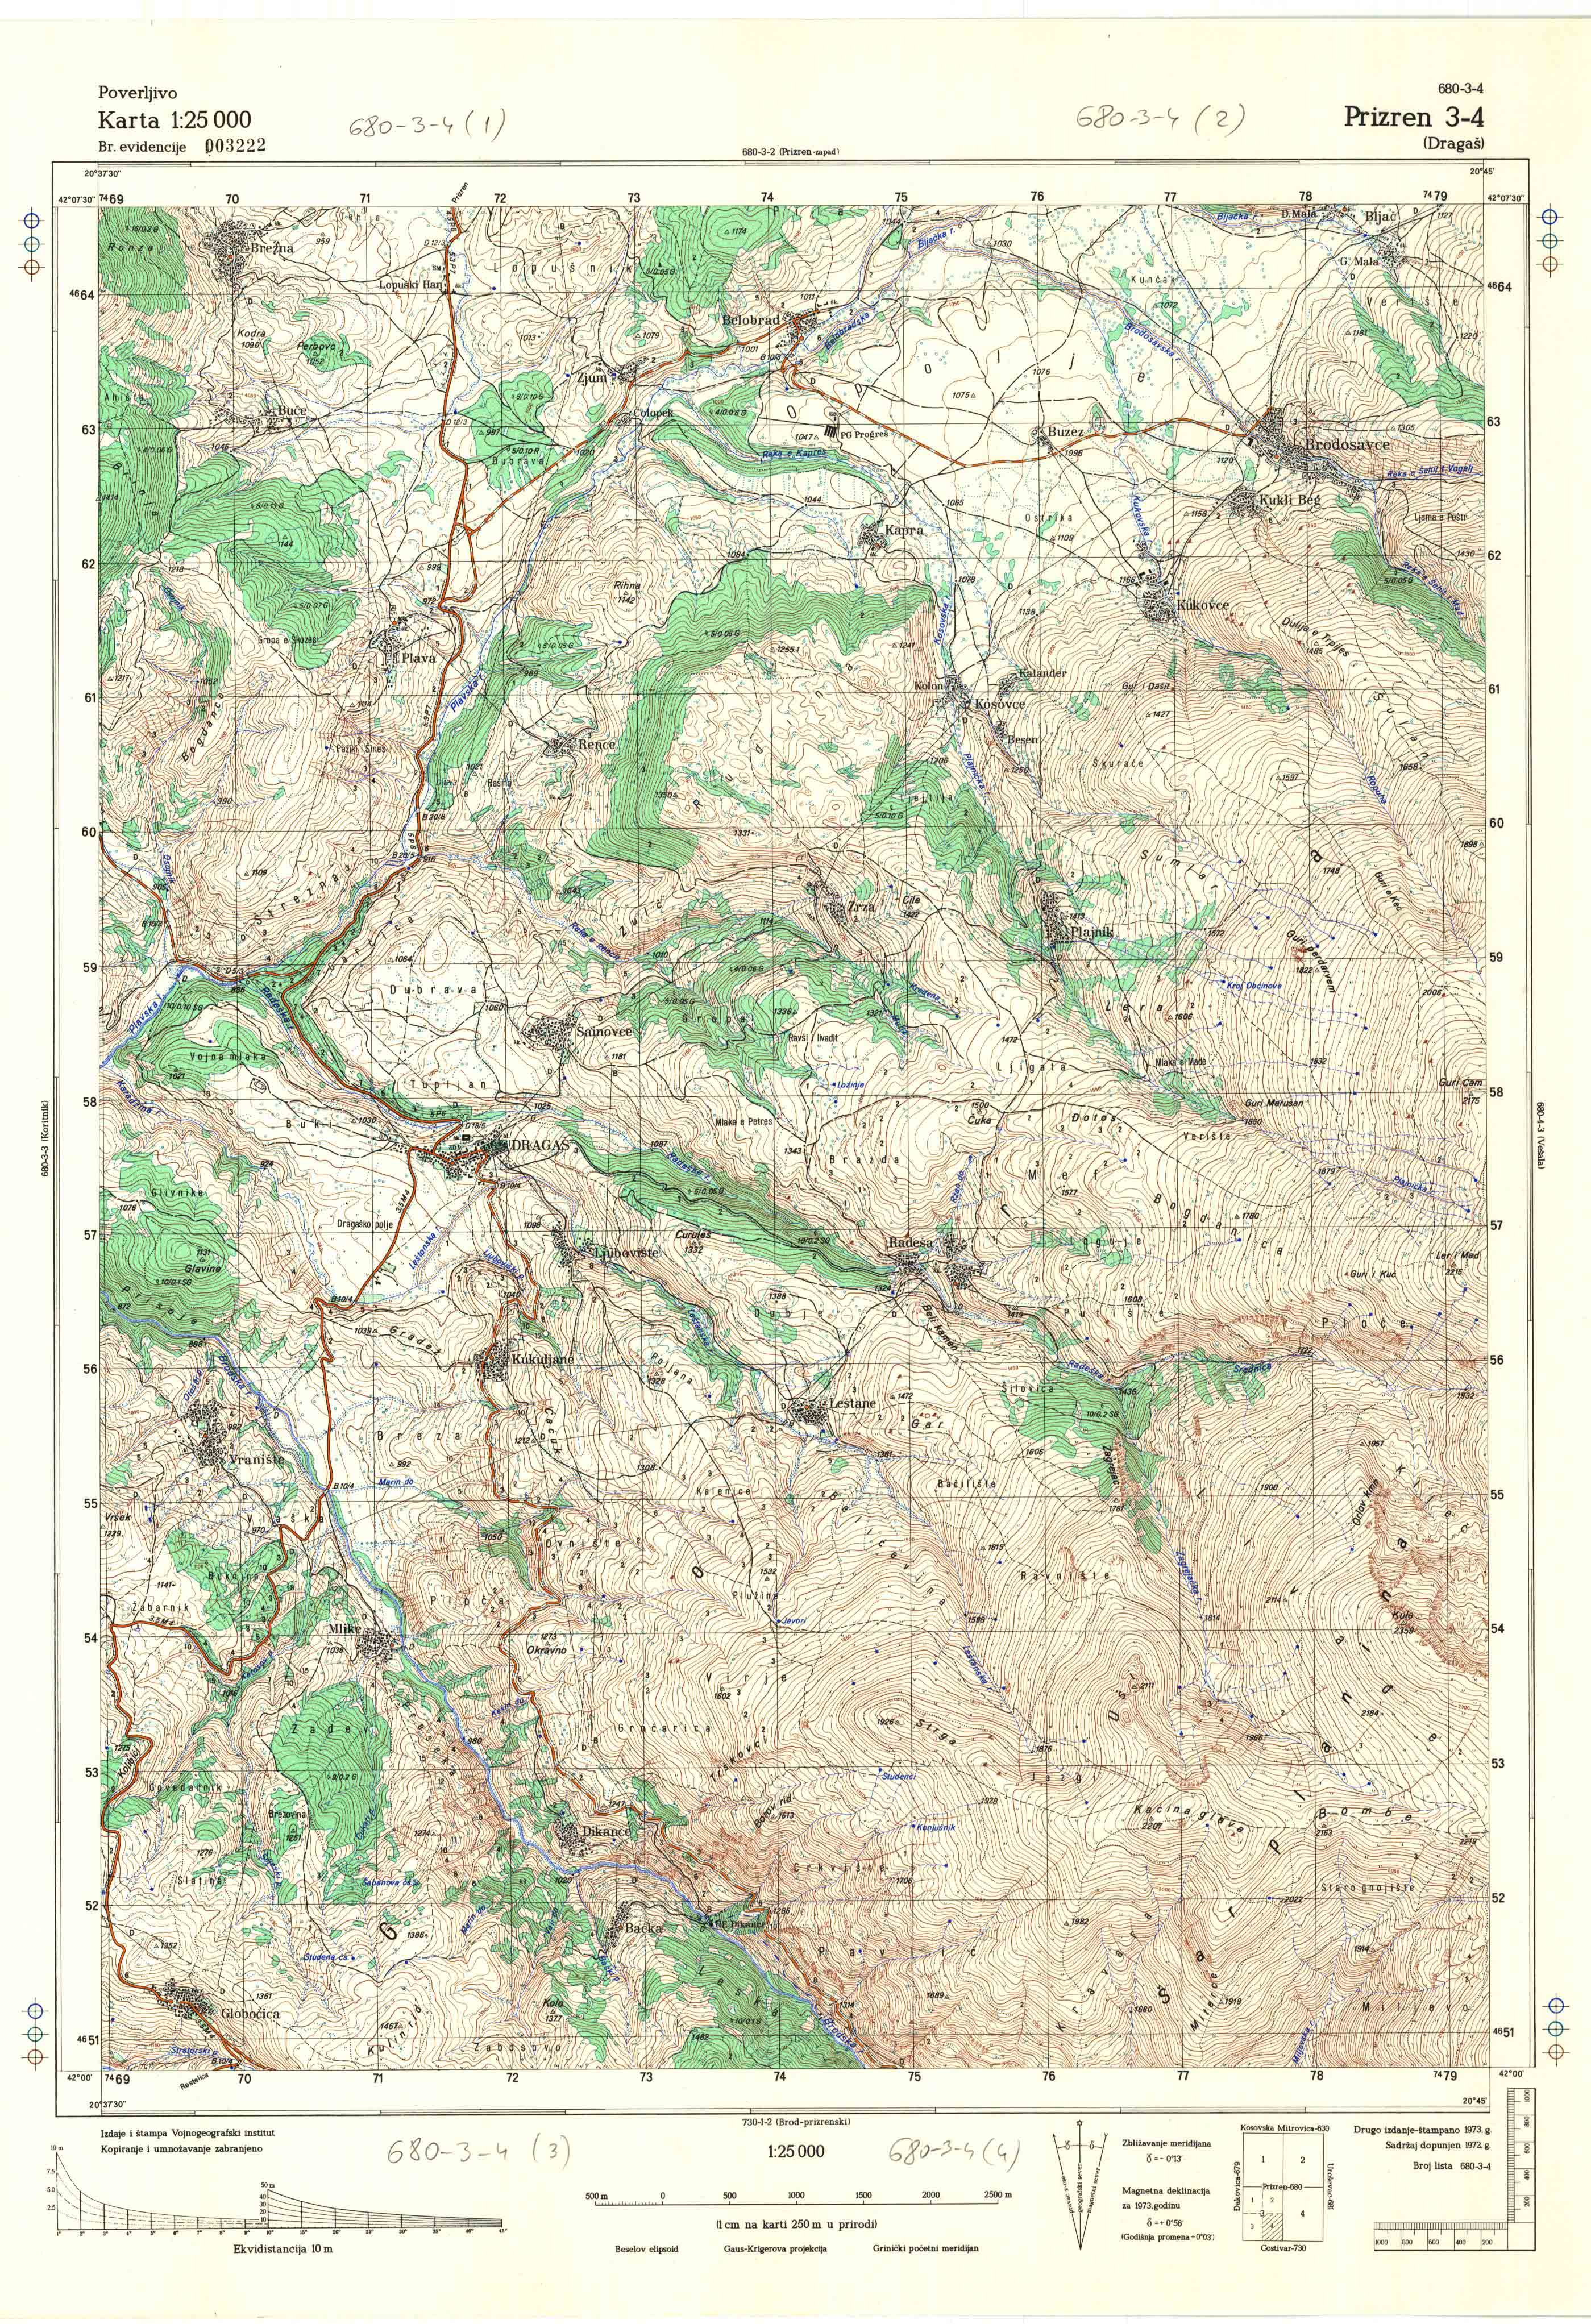  topografska karta Kosovo 25000 JNA  Prizren